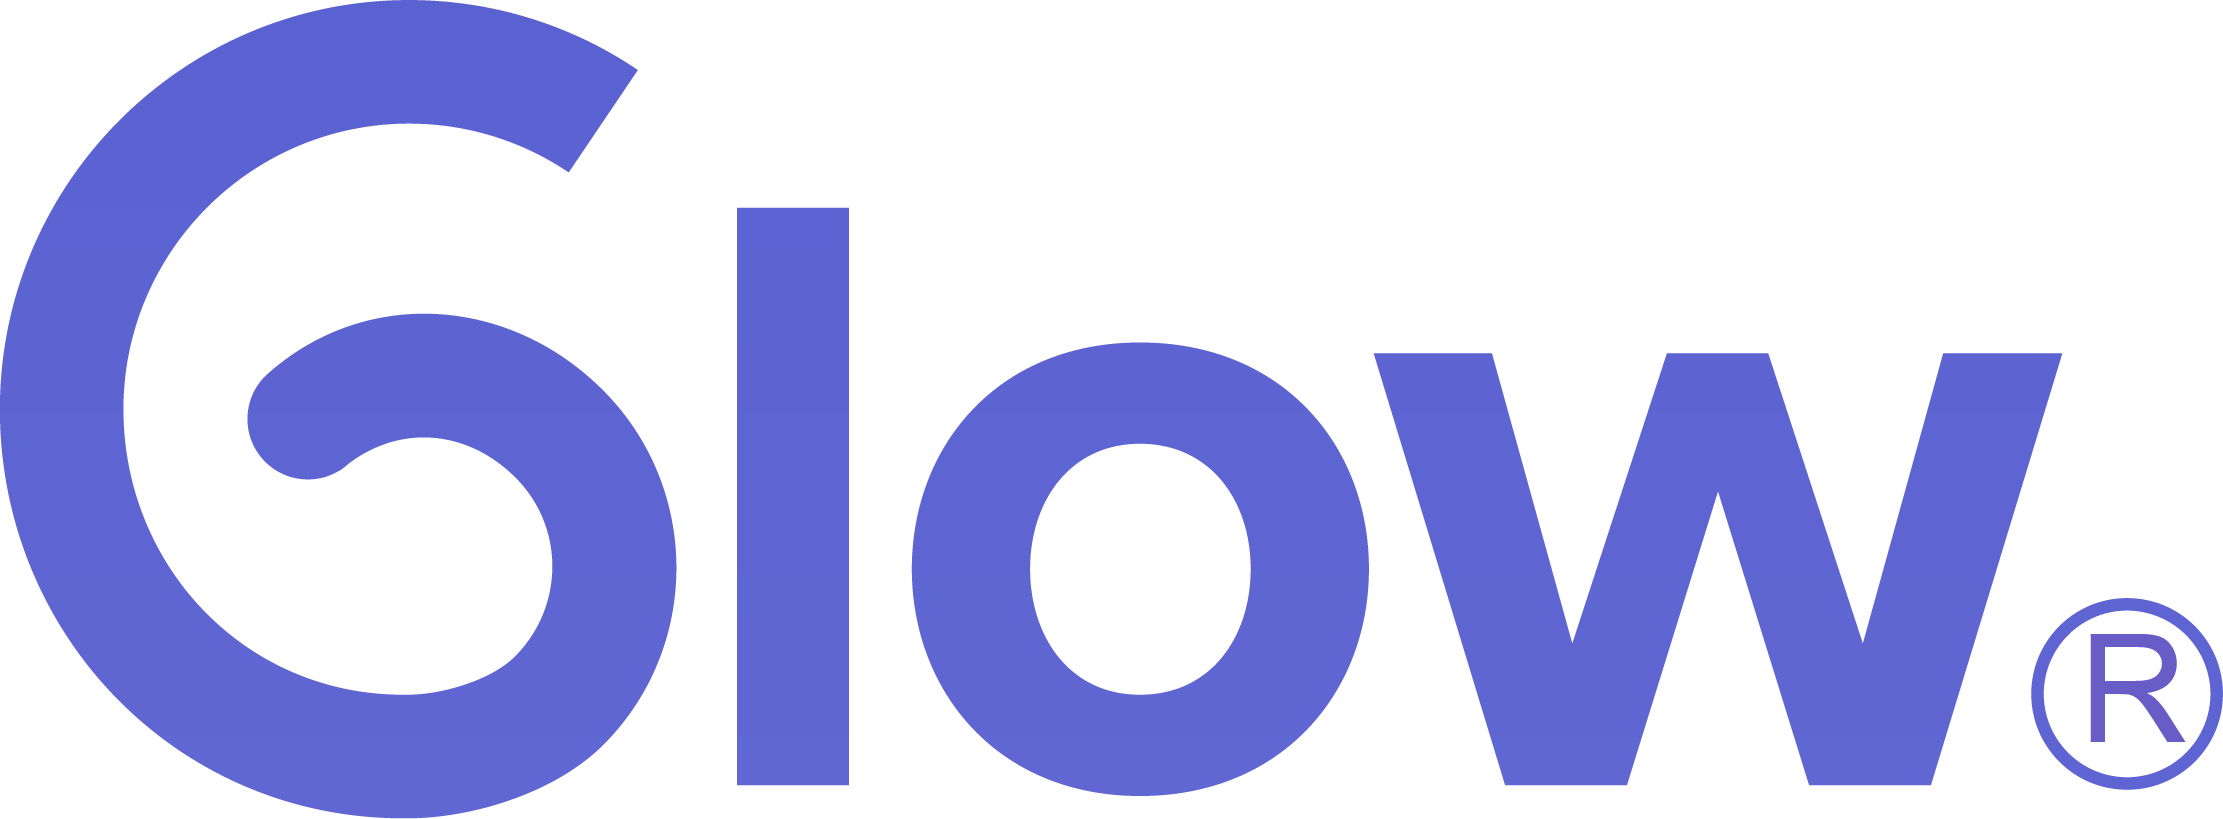 Image of Glow Shop logo